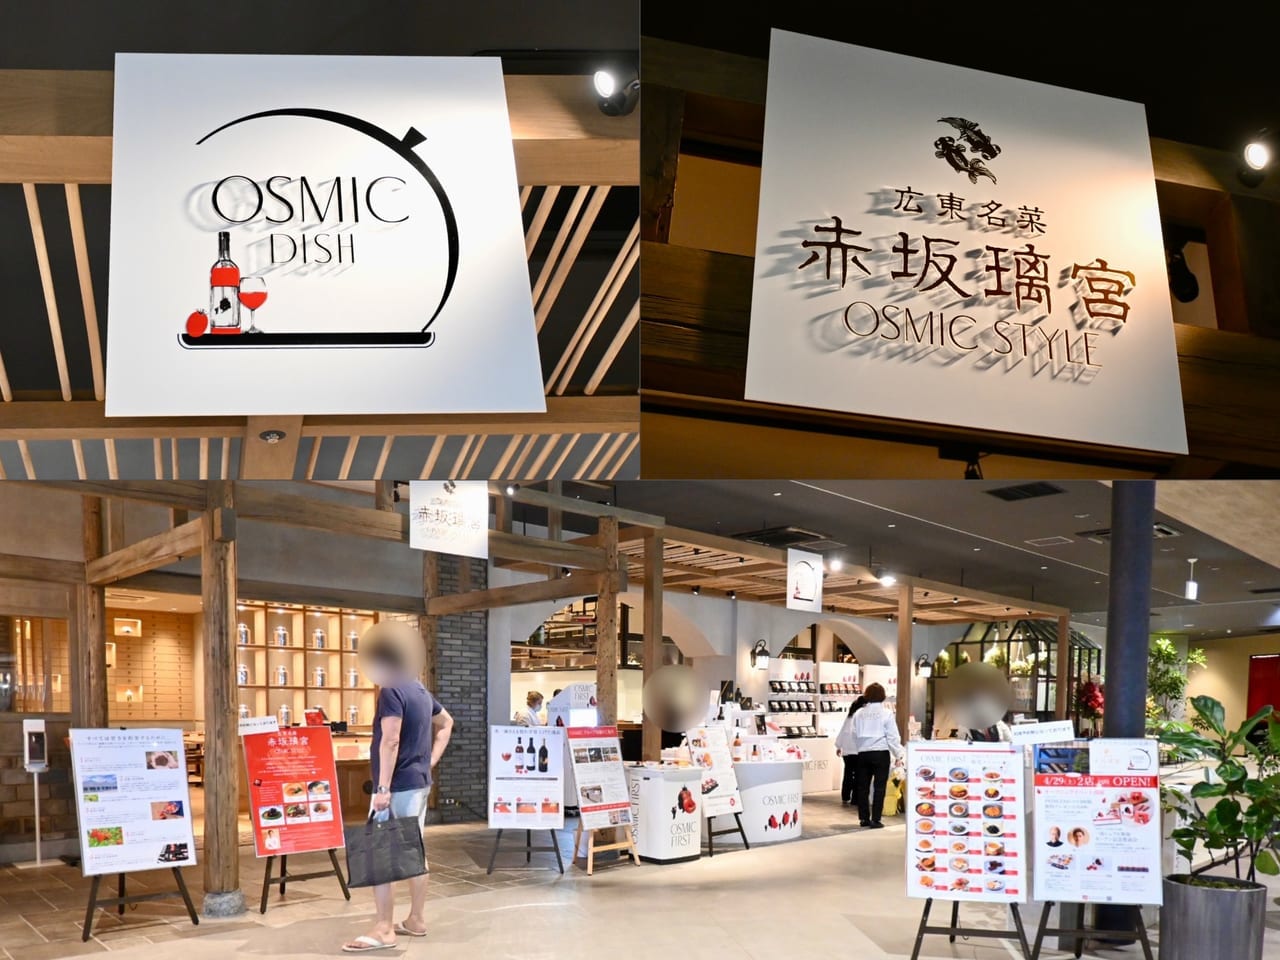 【吉川市】 OSMIC DISH・赤坂離宮OSMIC STYLEの営業時間のお知らせがありました。